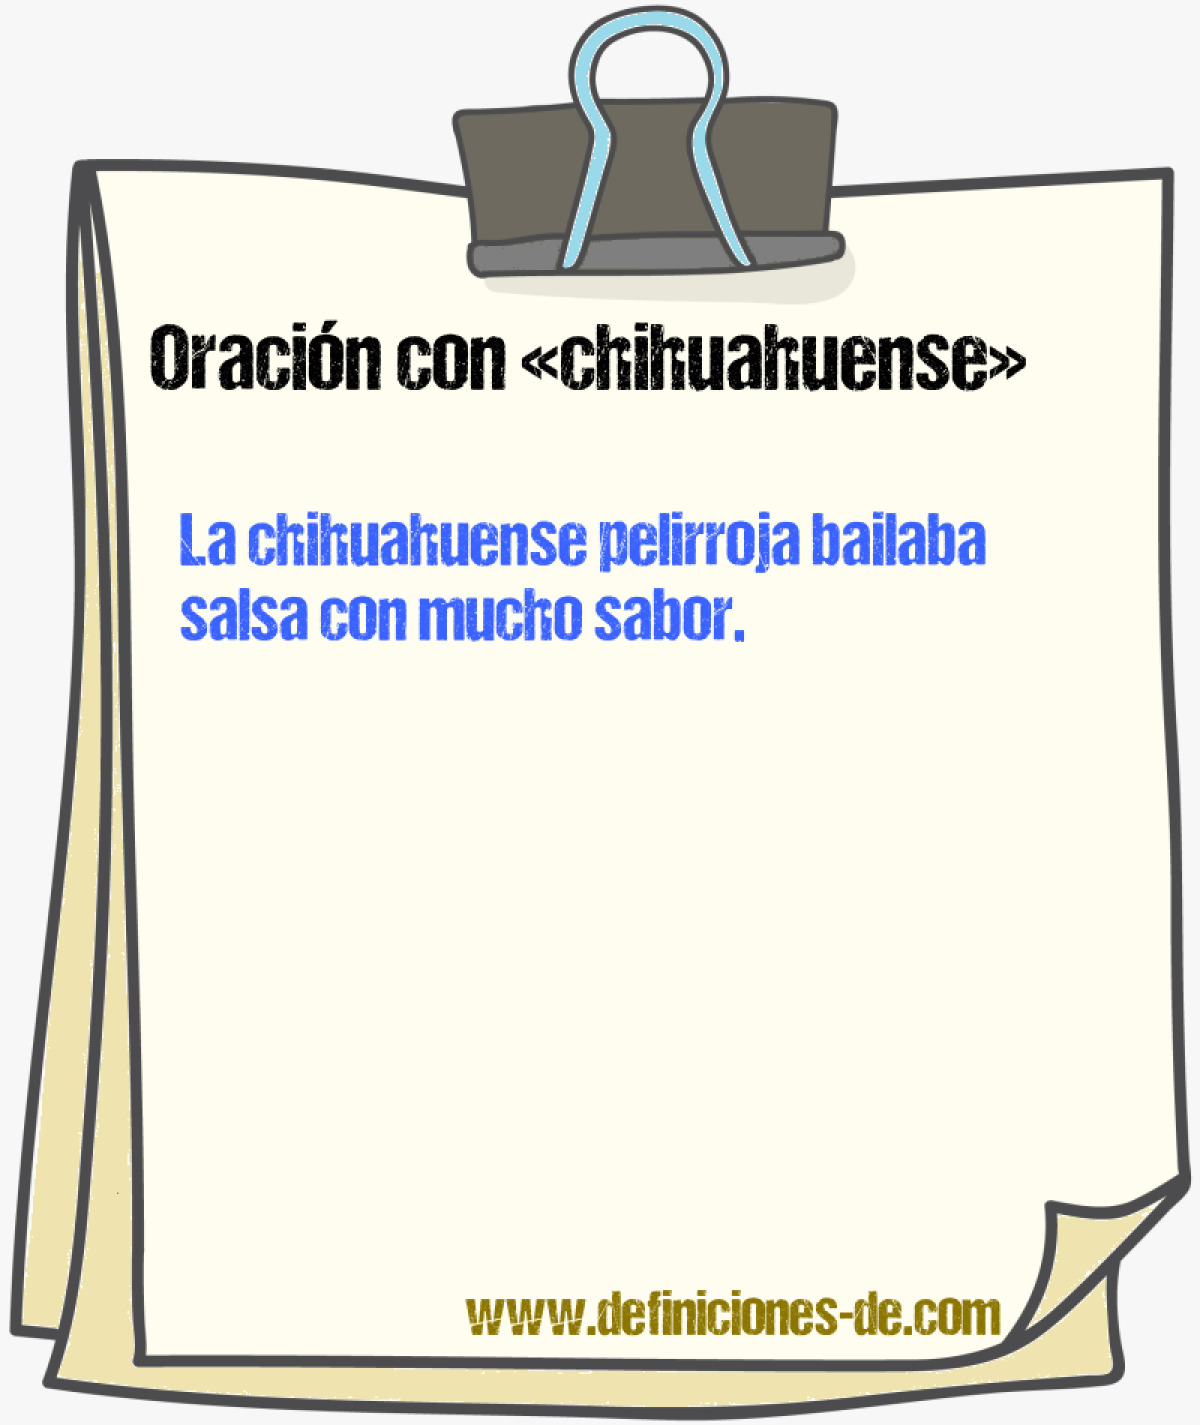 Ejemplos de oraciones con chihuahuense